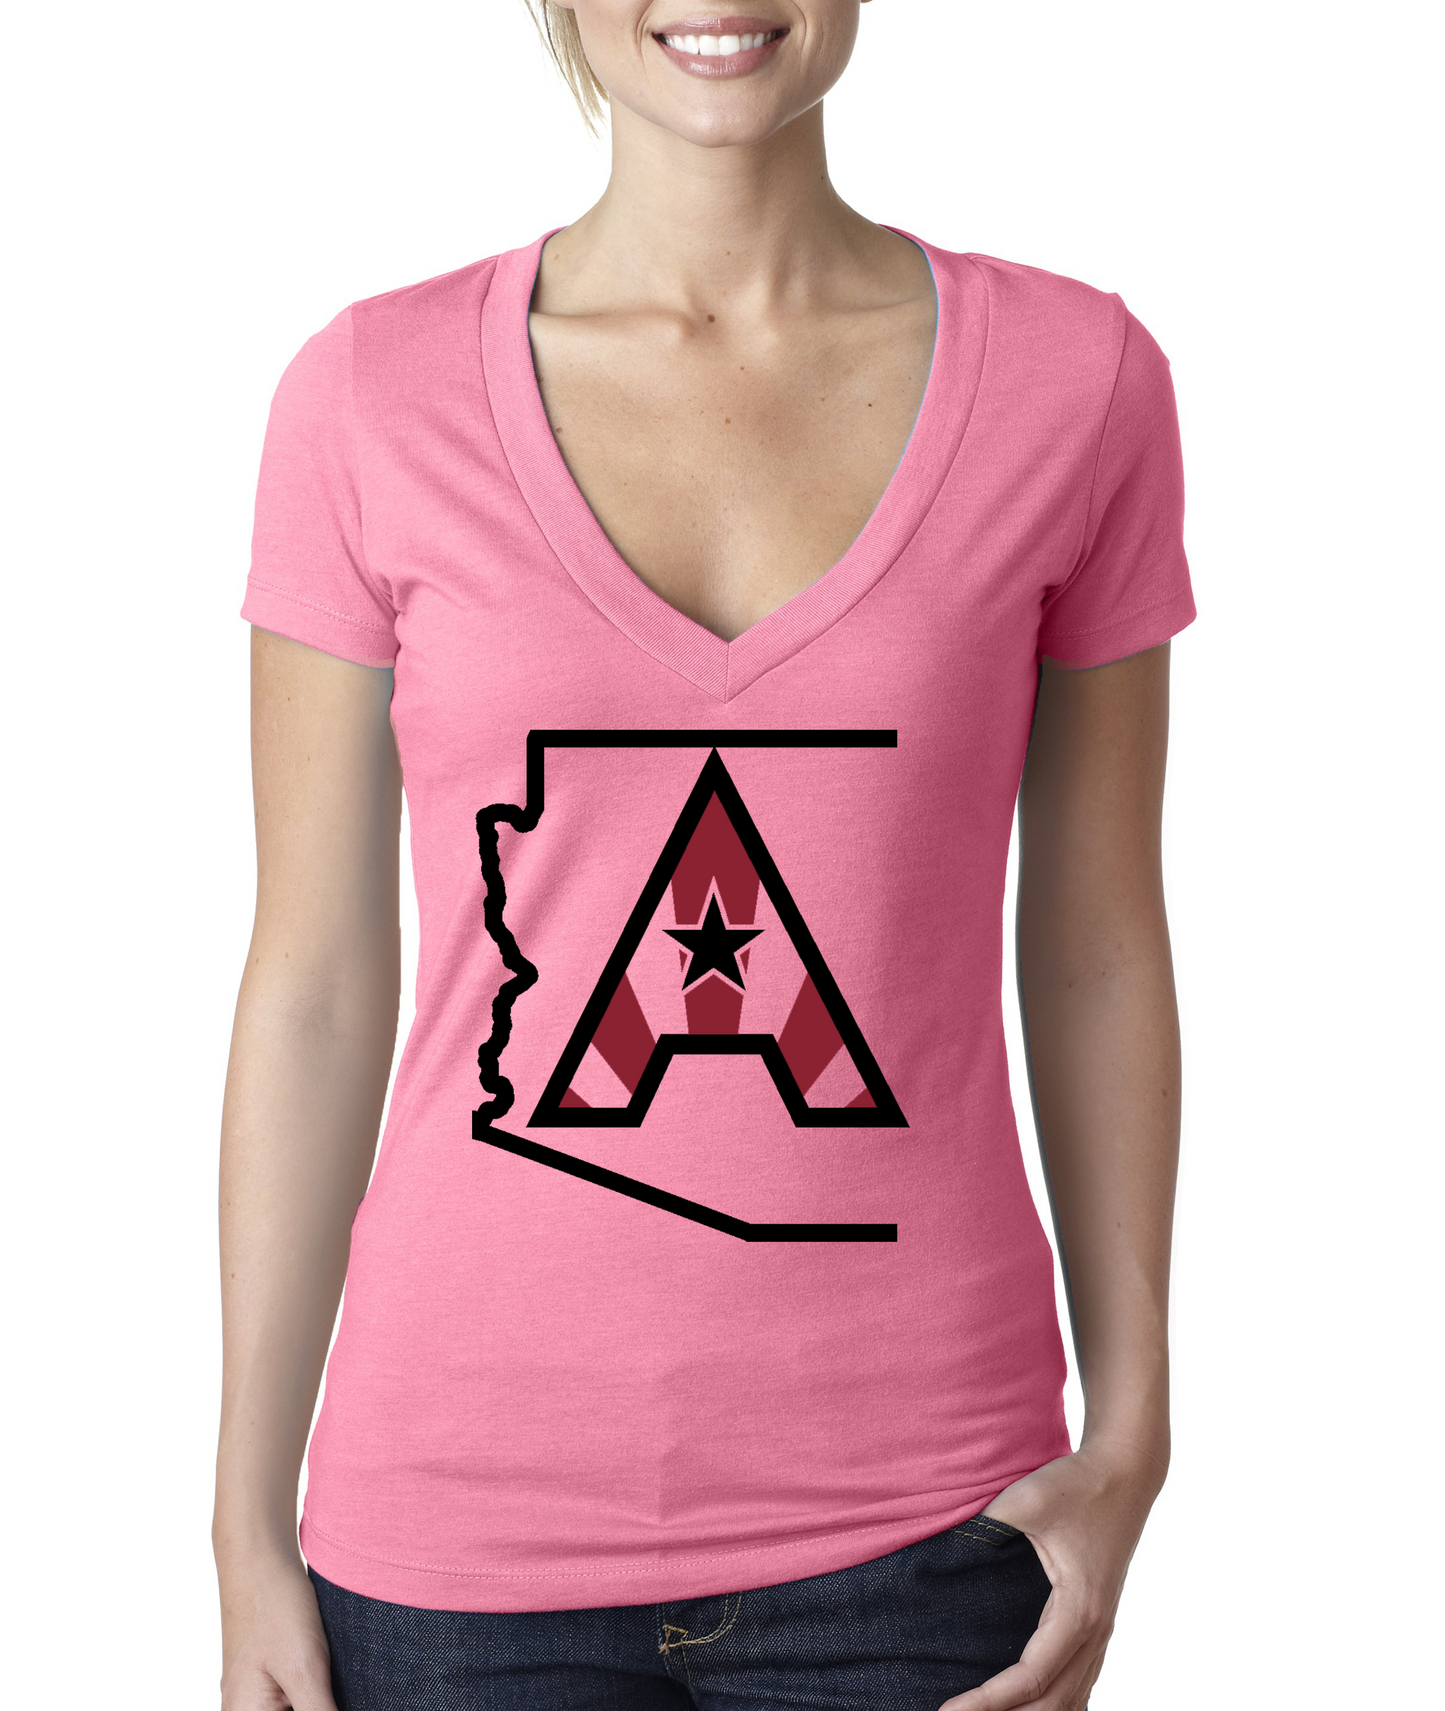 Arizoniacs Logo - Pink and Black Women's V-neck